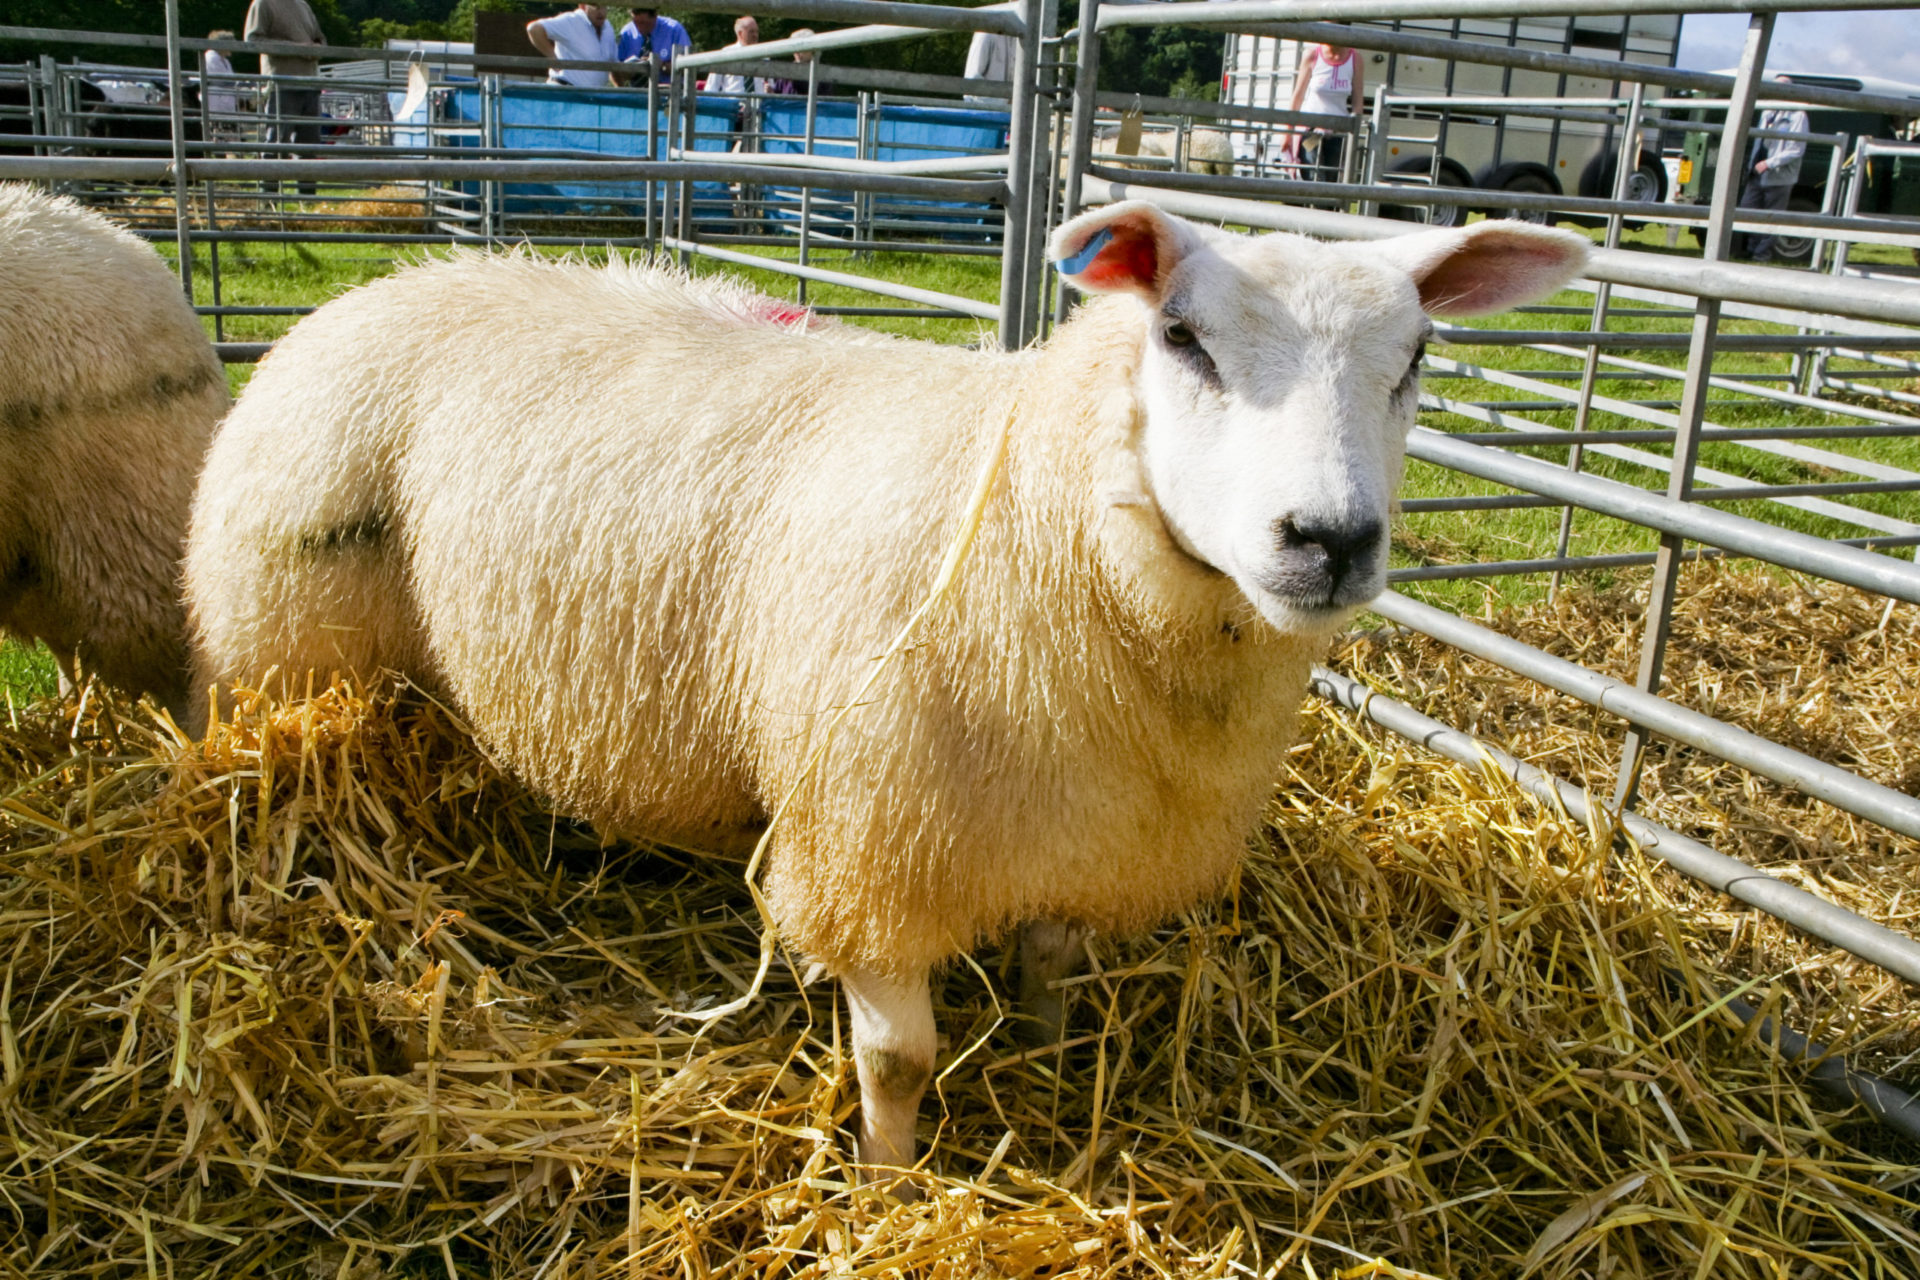 Tenbury Sheep Show